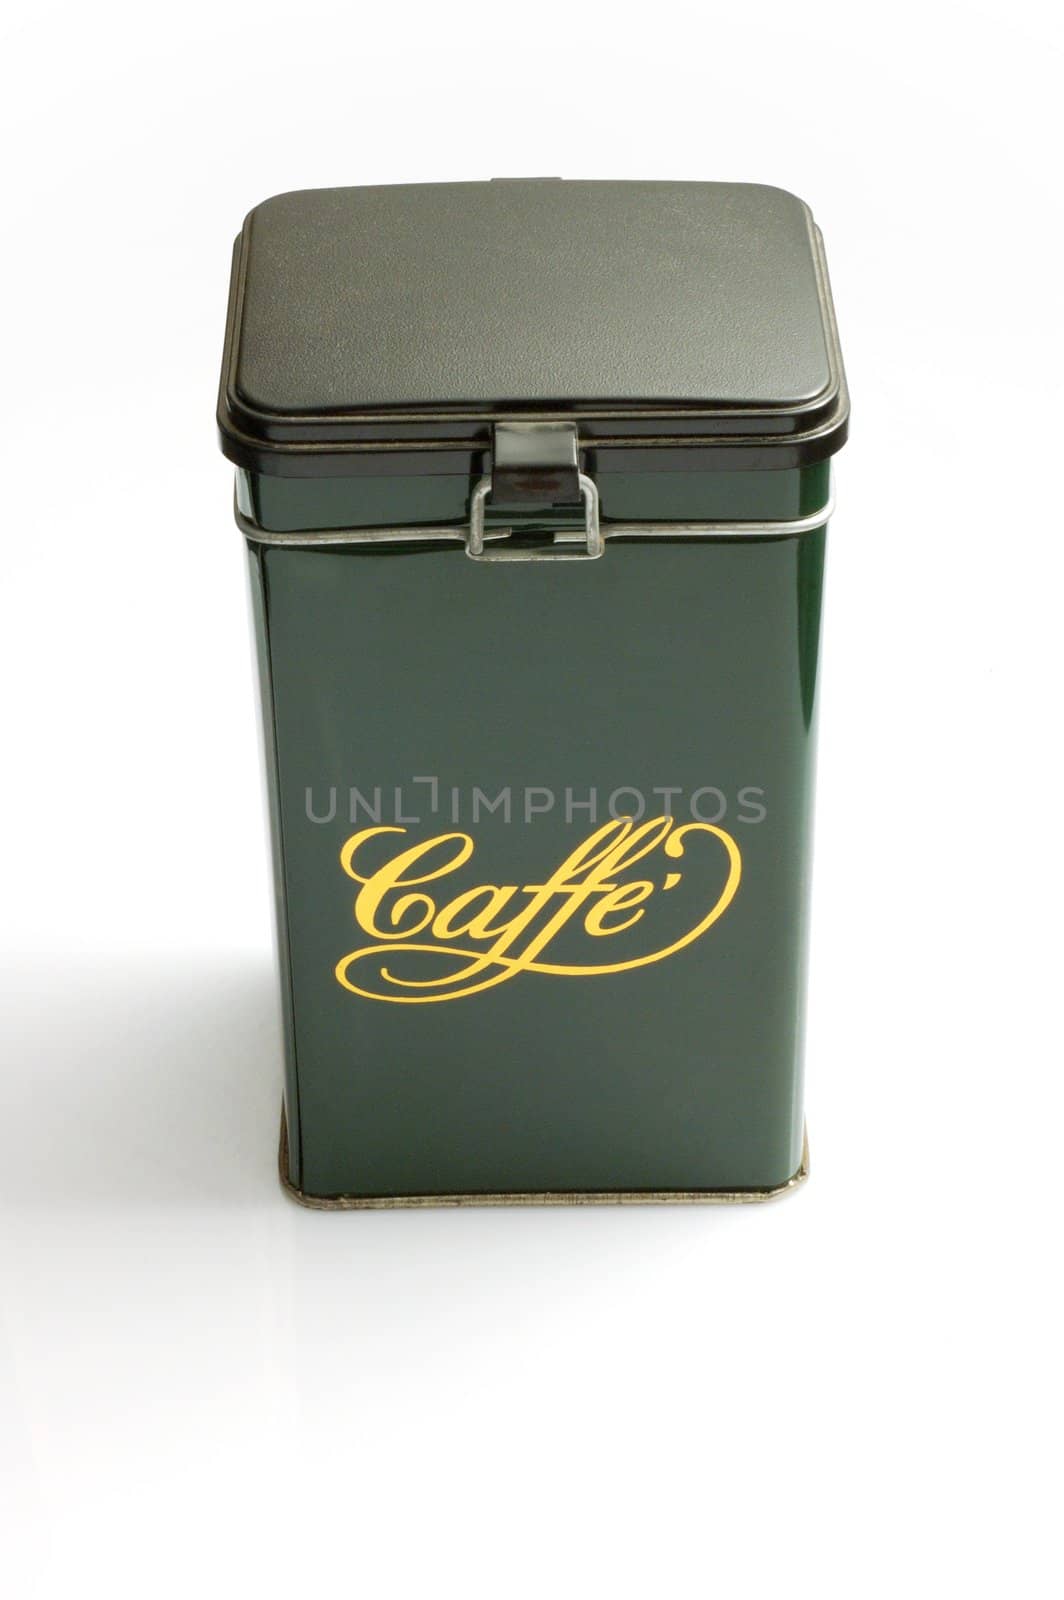 Green metallic coffee box - italian style